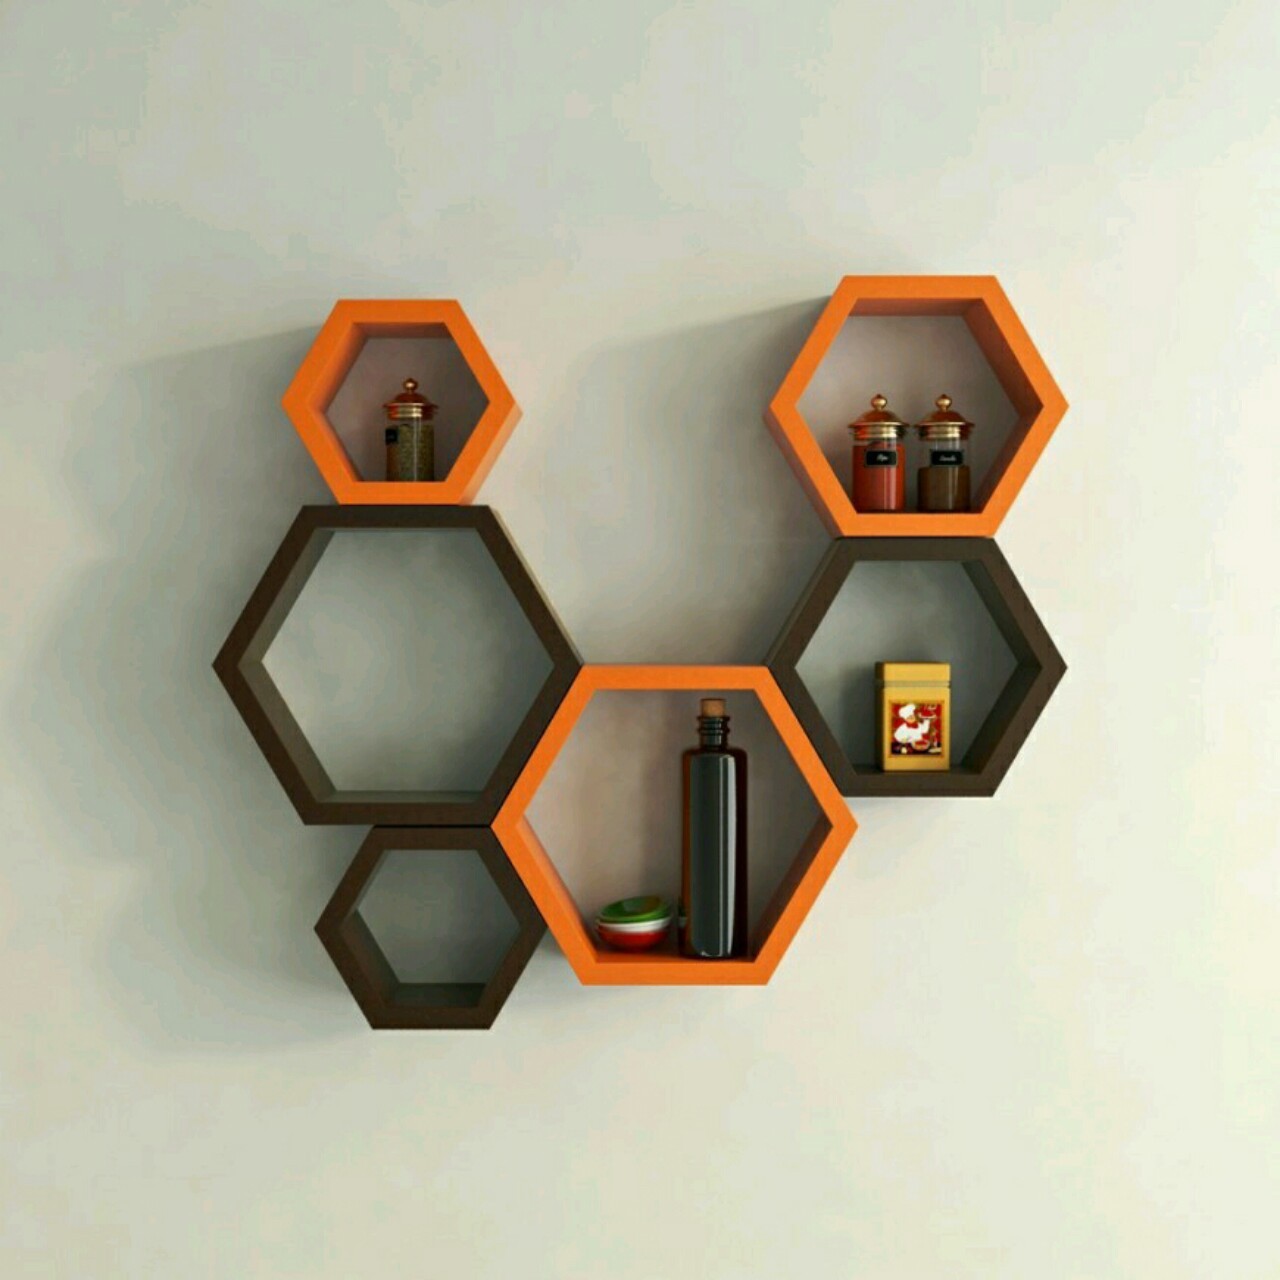 Hexagonal Wall Shelf - Handicrafts Original